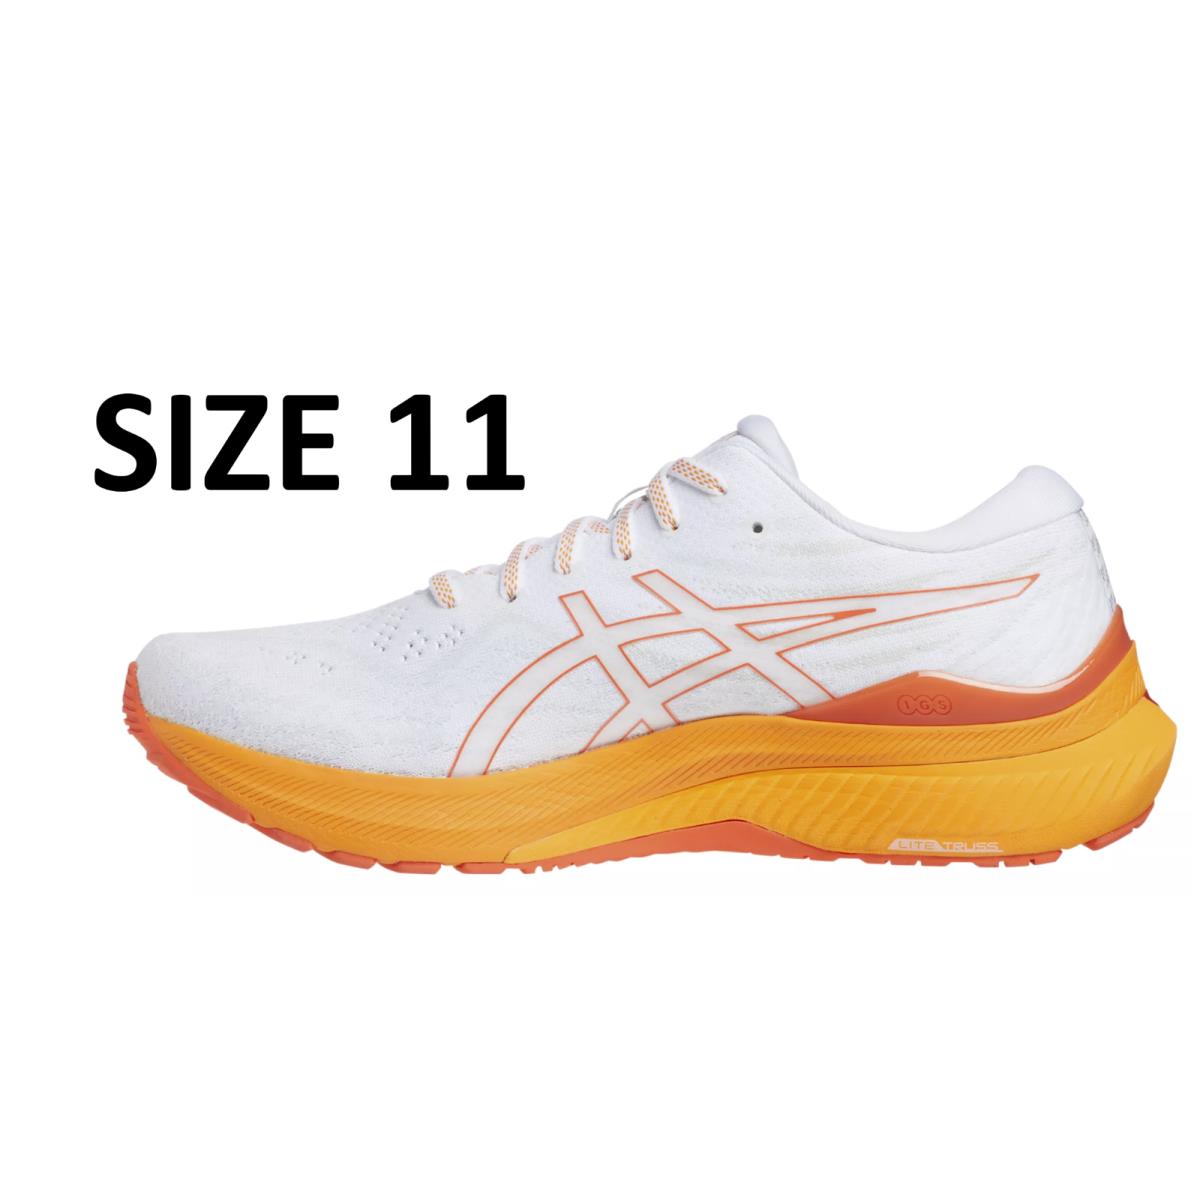 Asics Men`s Gel-kayano 29 Running Shoes White and Orange Size 11